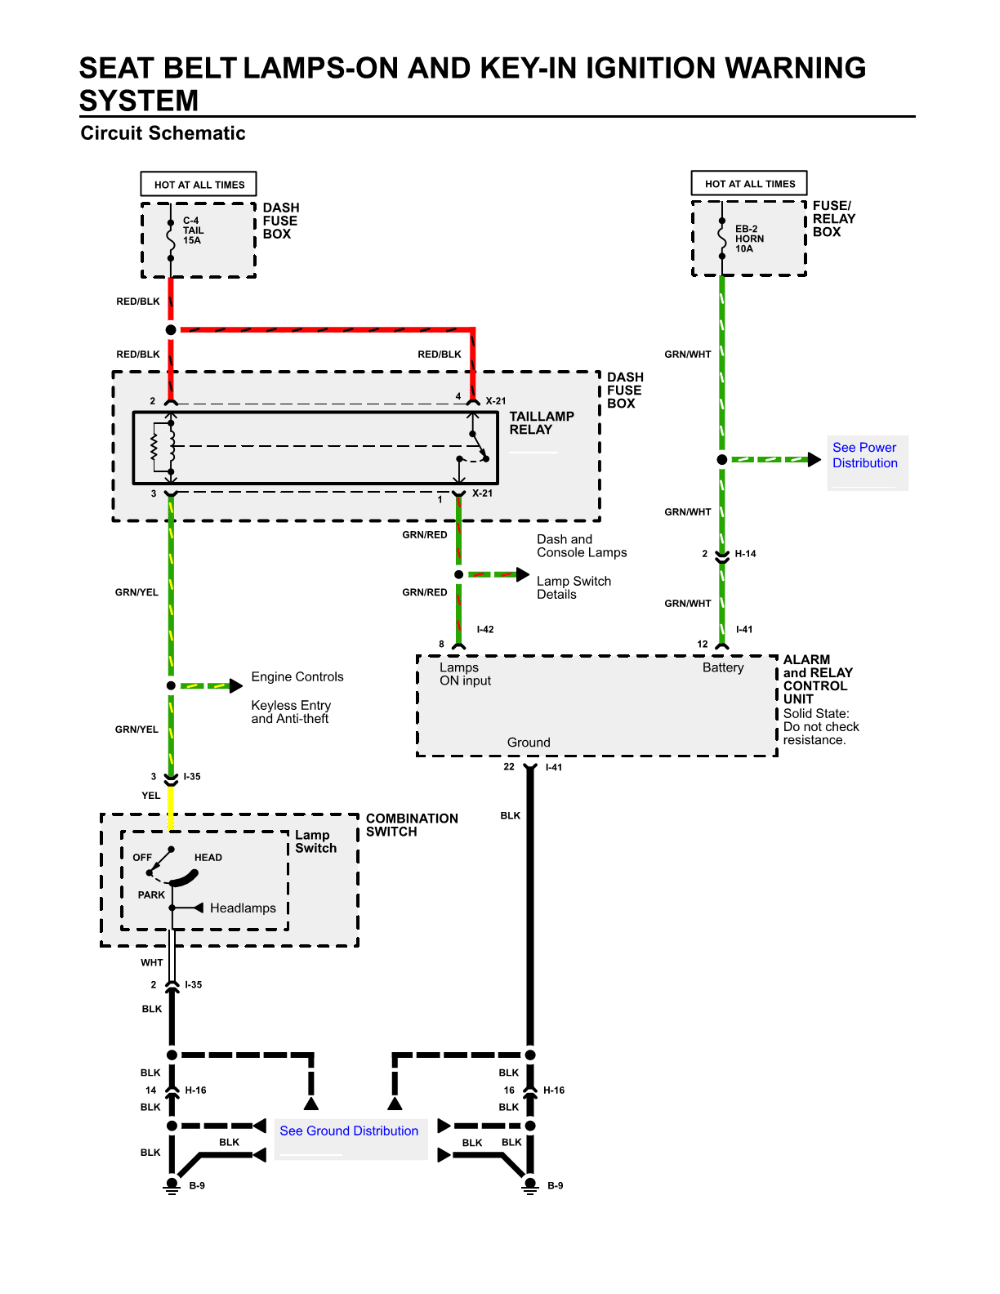 door jamb switch wiring diagram